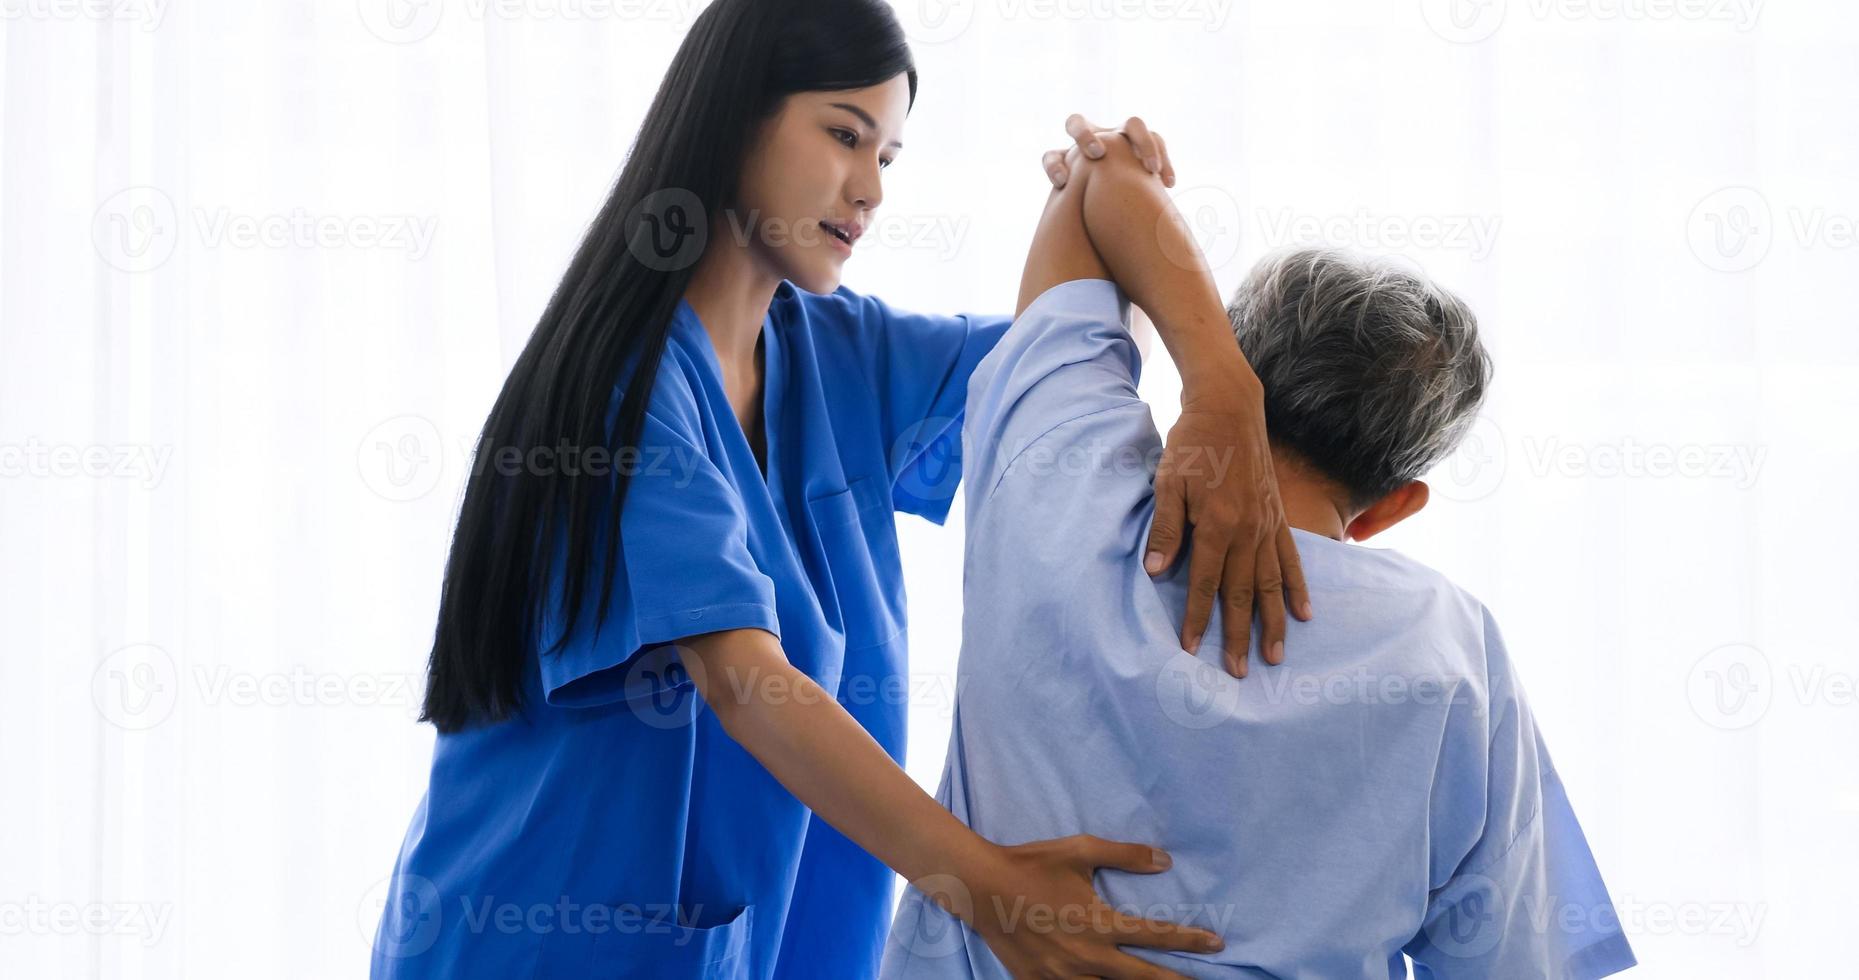 physiothérapeute féminine faisant de la physiothérapie pour un patient adulte dans une chambre d'hôpital. photo